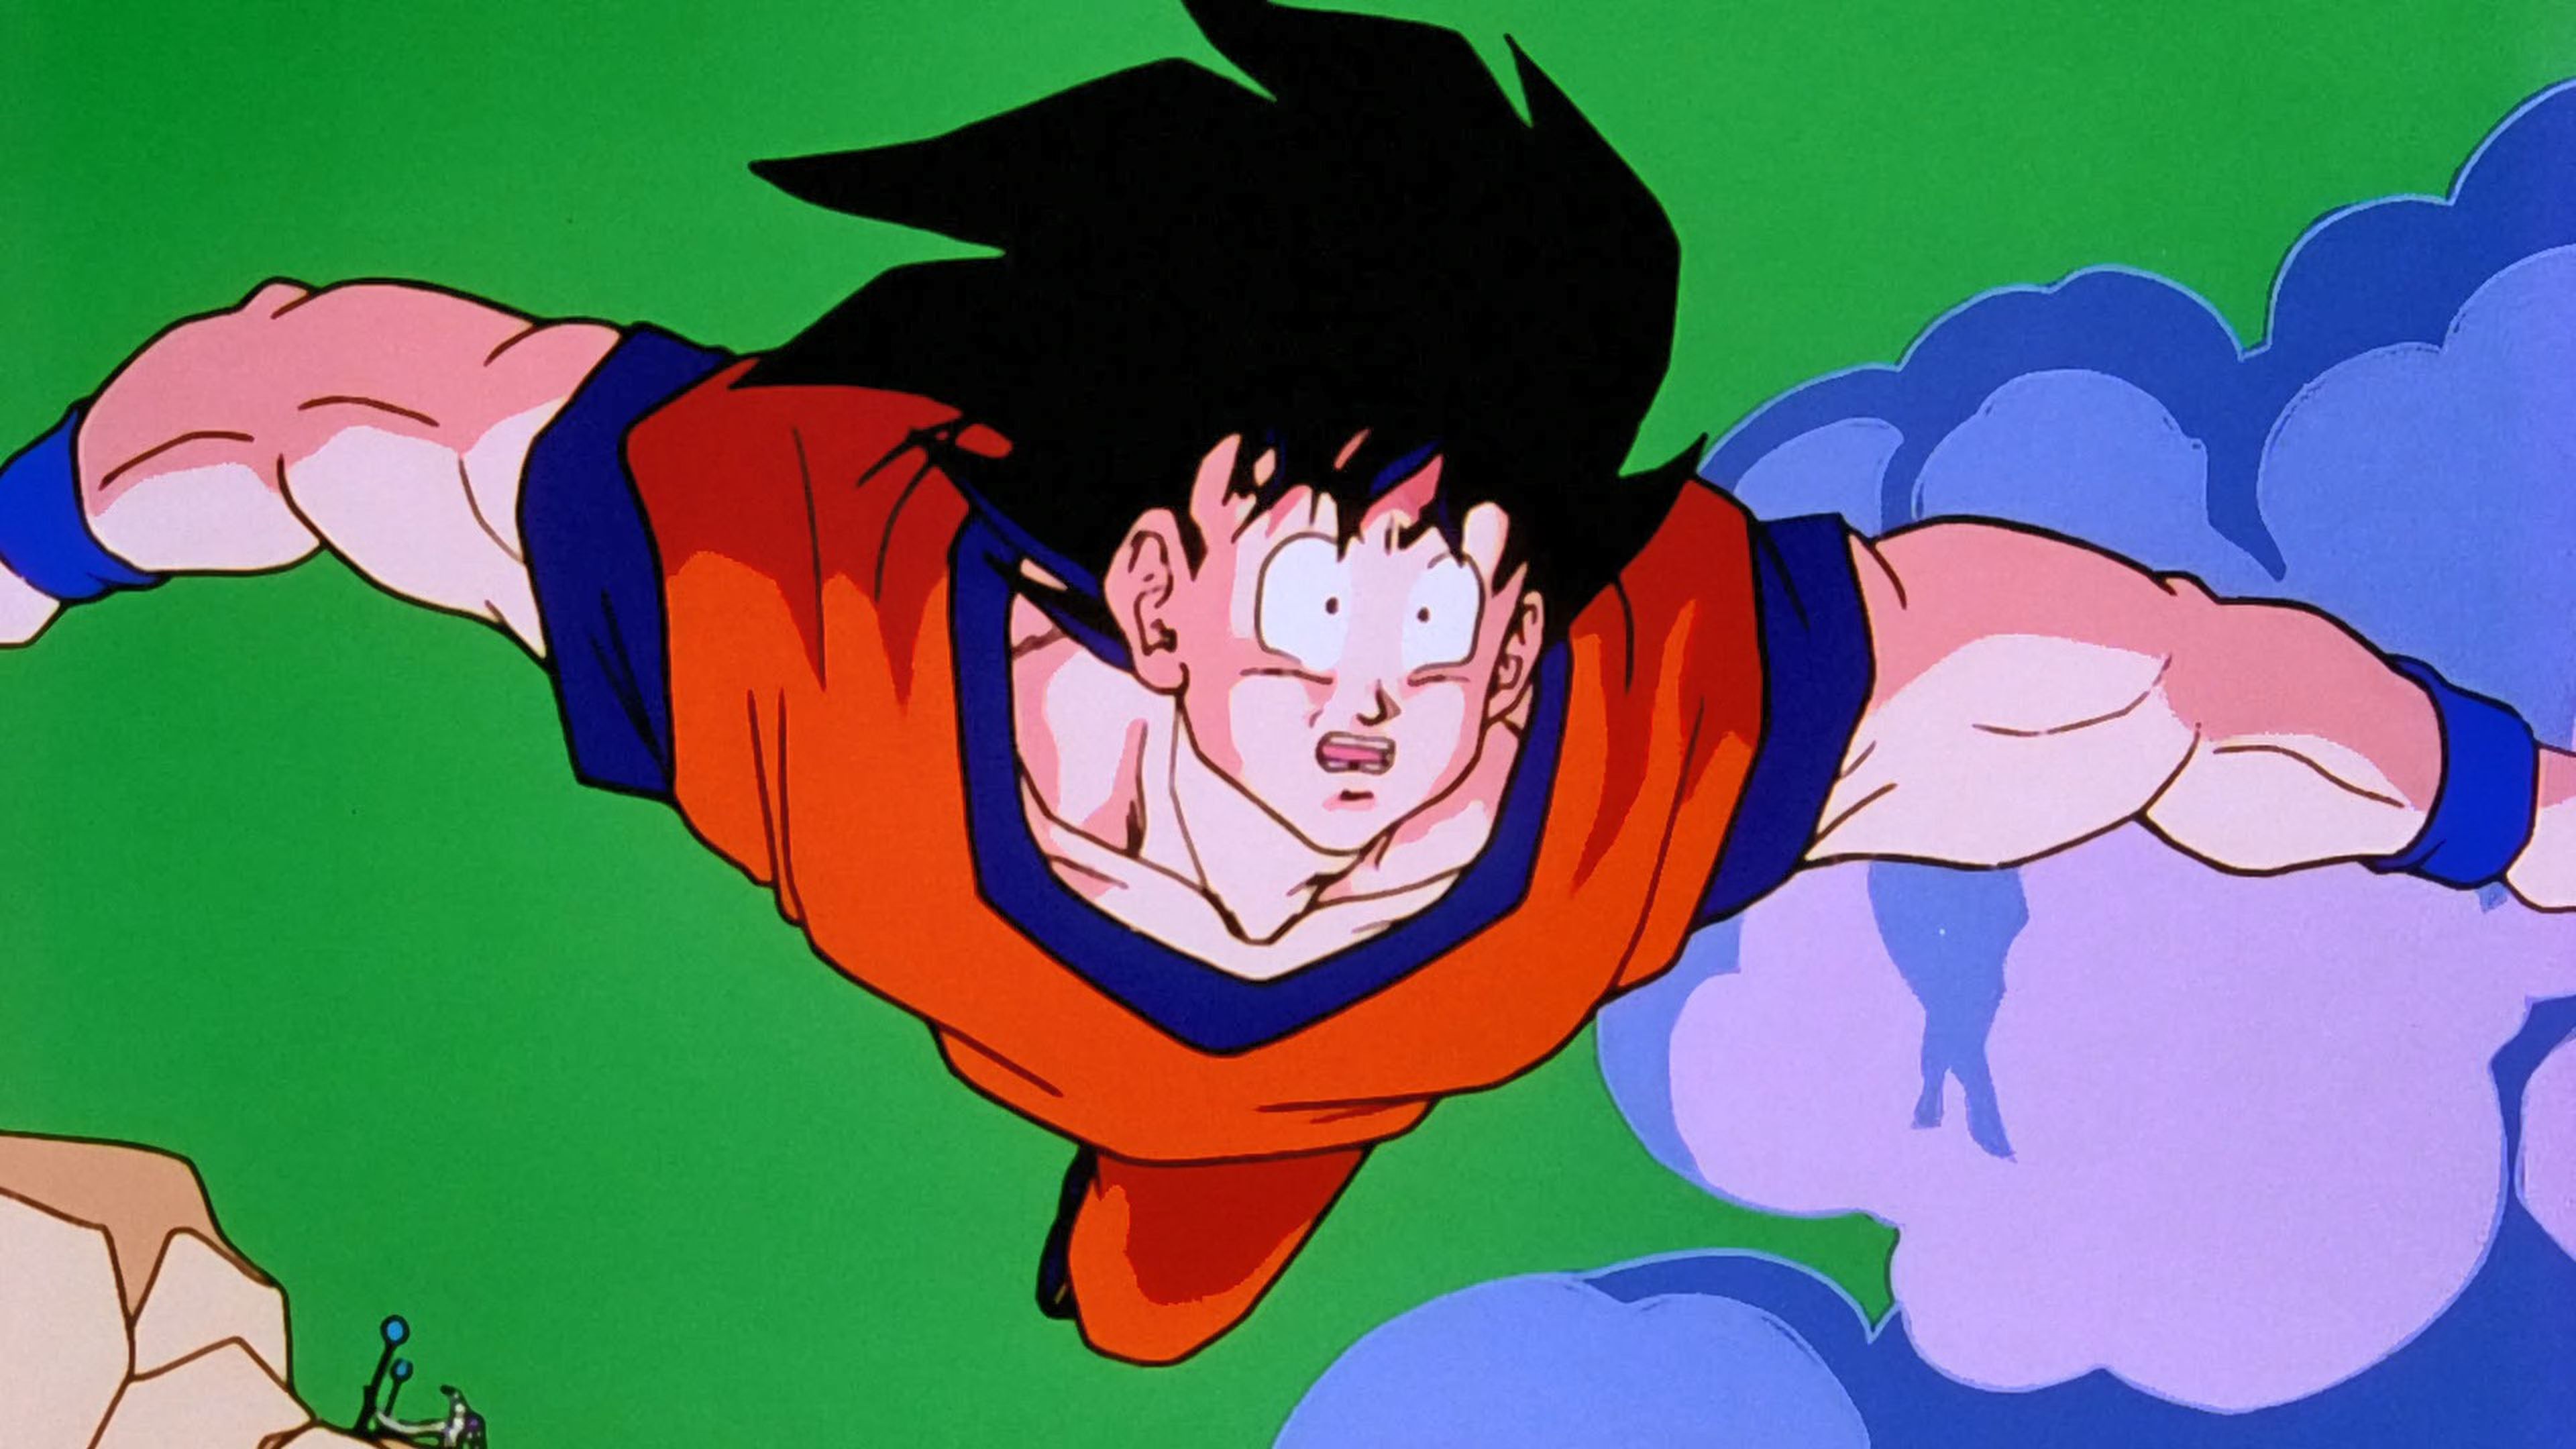 Goku cambia por completo su personalidad como saiyan en Dragon